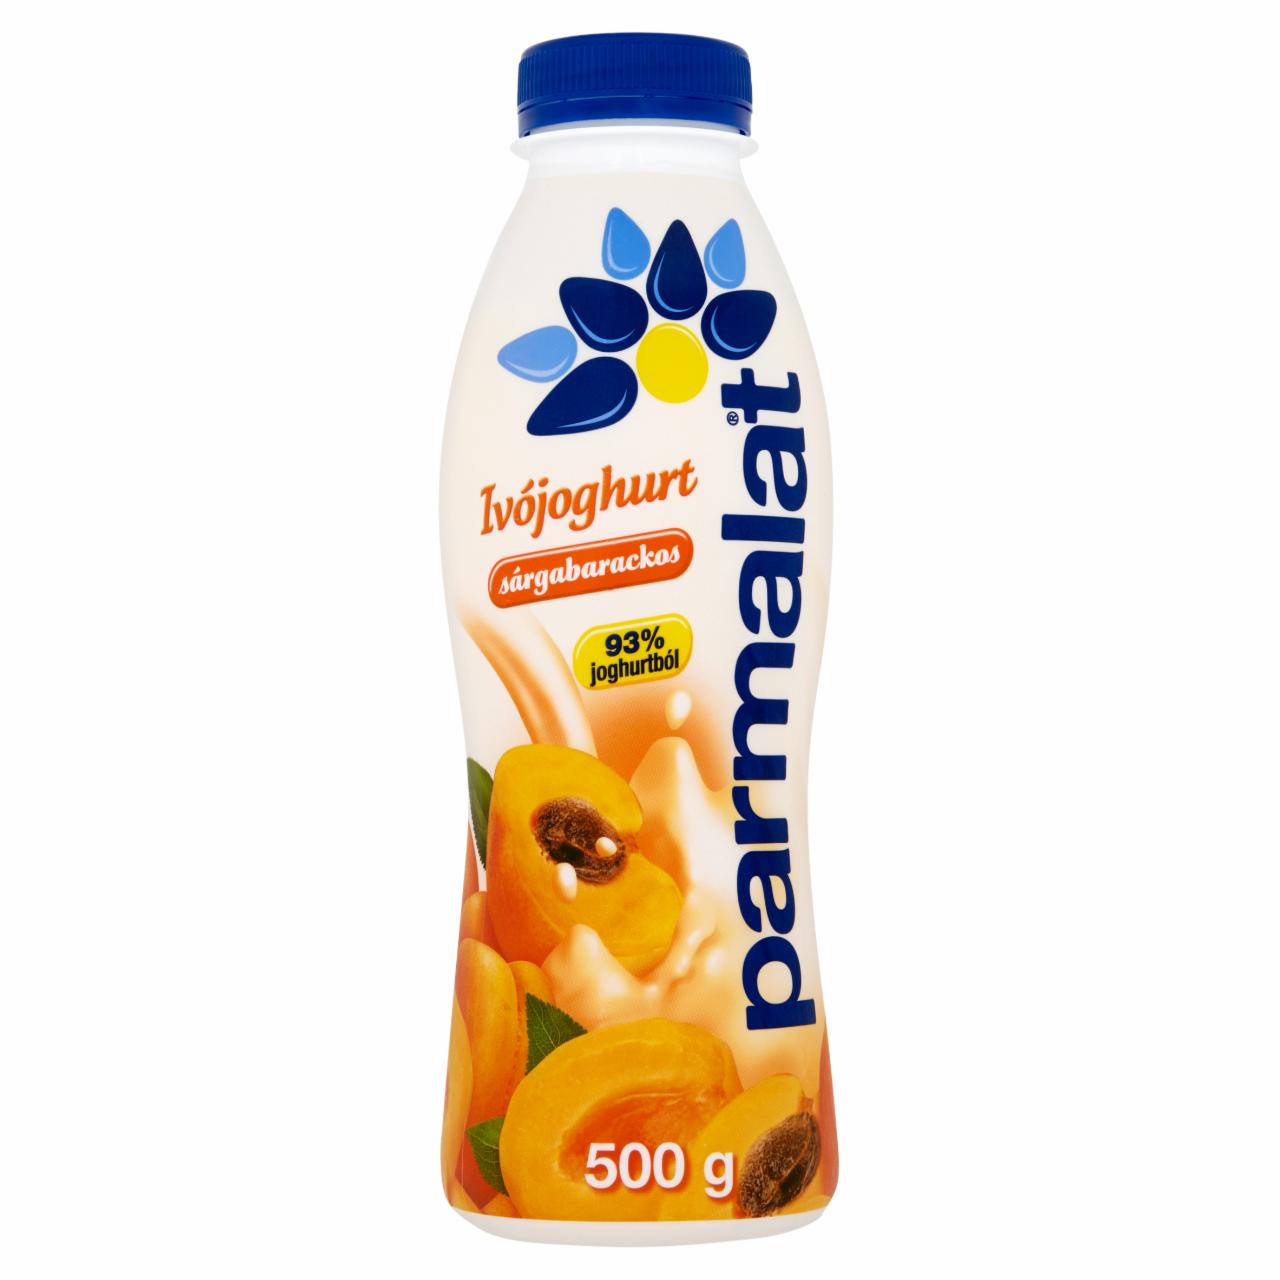 Képek - Parmalat sárgabarackos ivójoghurt 500 g